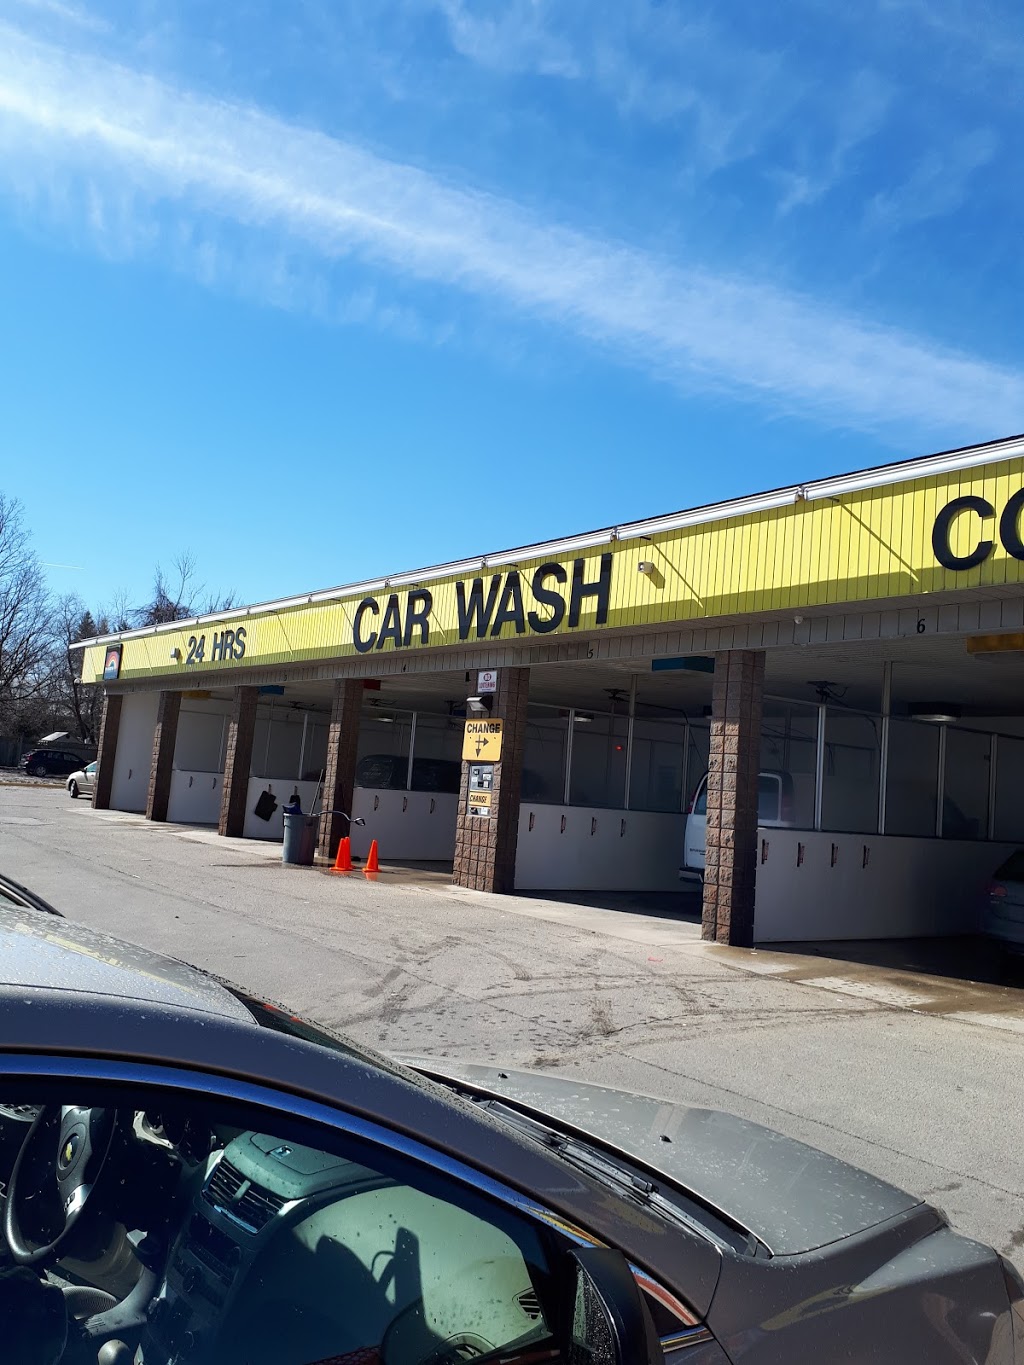 Rainbow Car Wash | 279 King George Rd, Brantford, ON N3R 5L1, Canada | Phone: (905) 616-5049